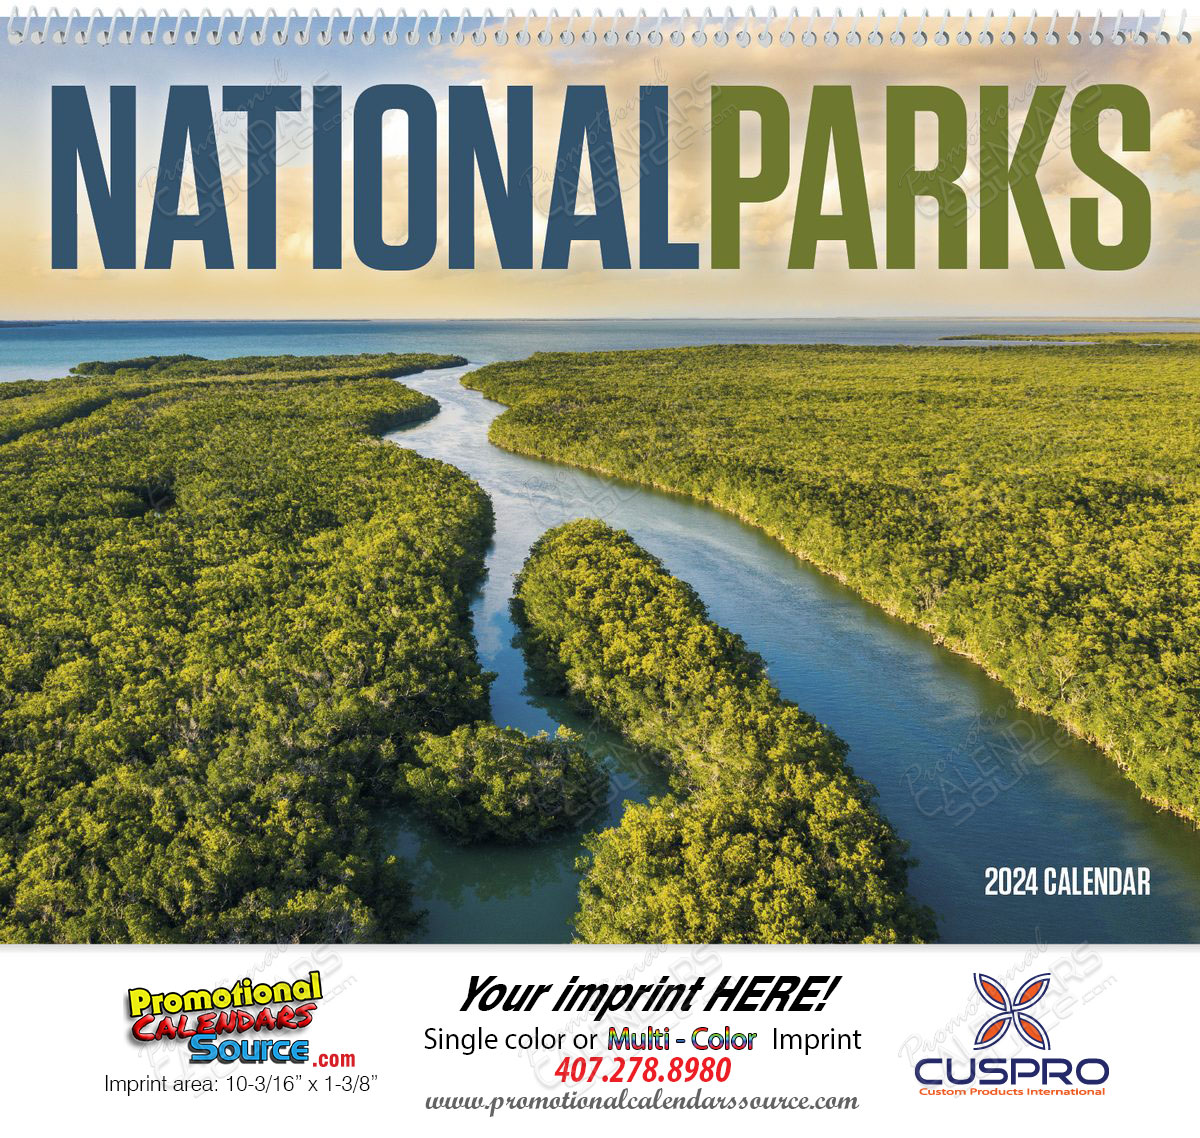 National Parks Promotional Calendar 